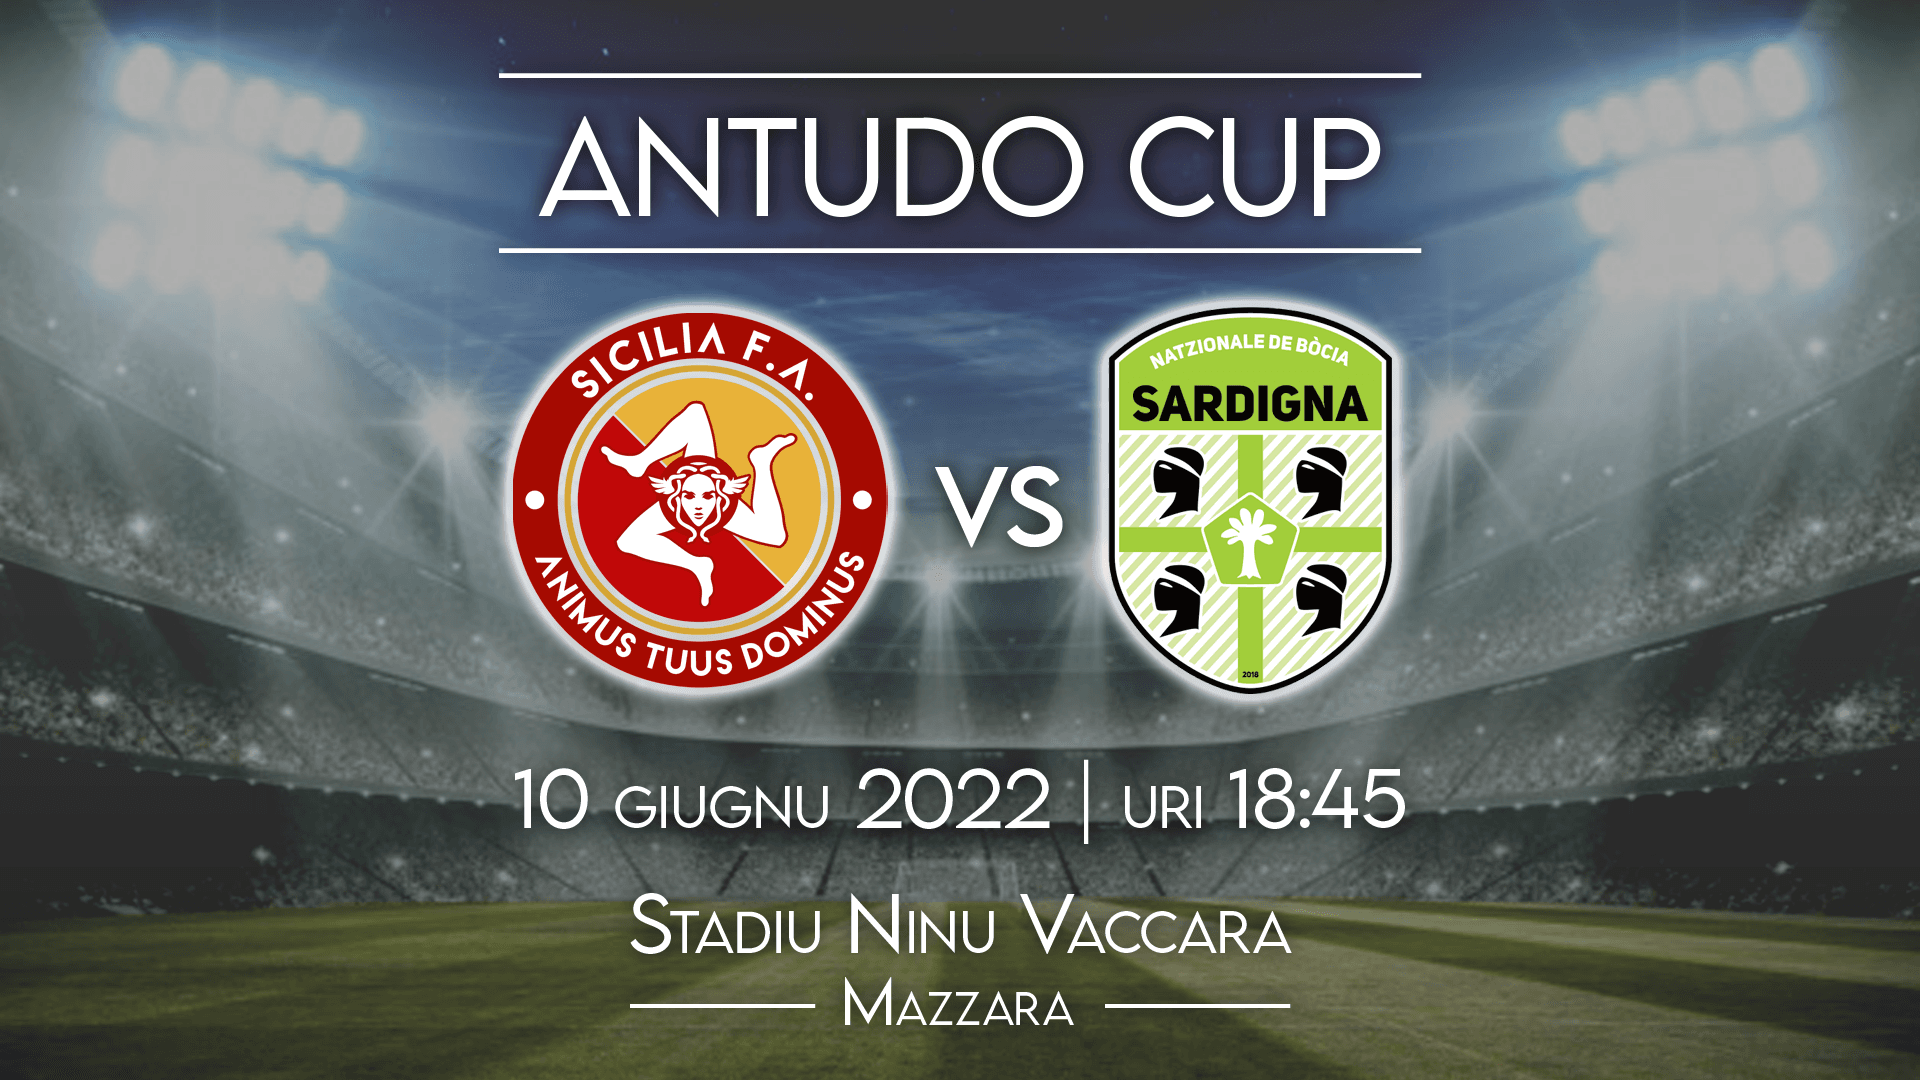 Antudo Cup: il 10 maggio a Mazara sfida fra la Nazionale Siciliana e quella Sarda